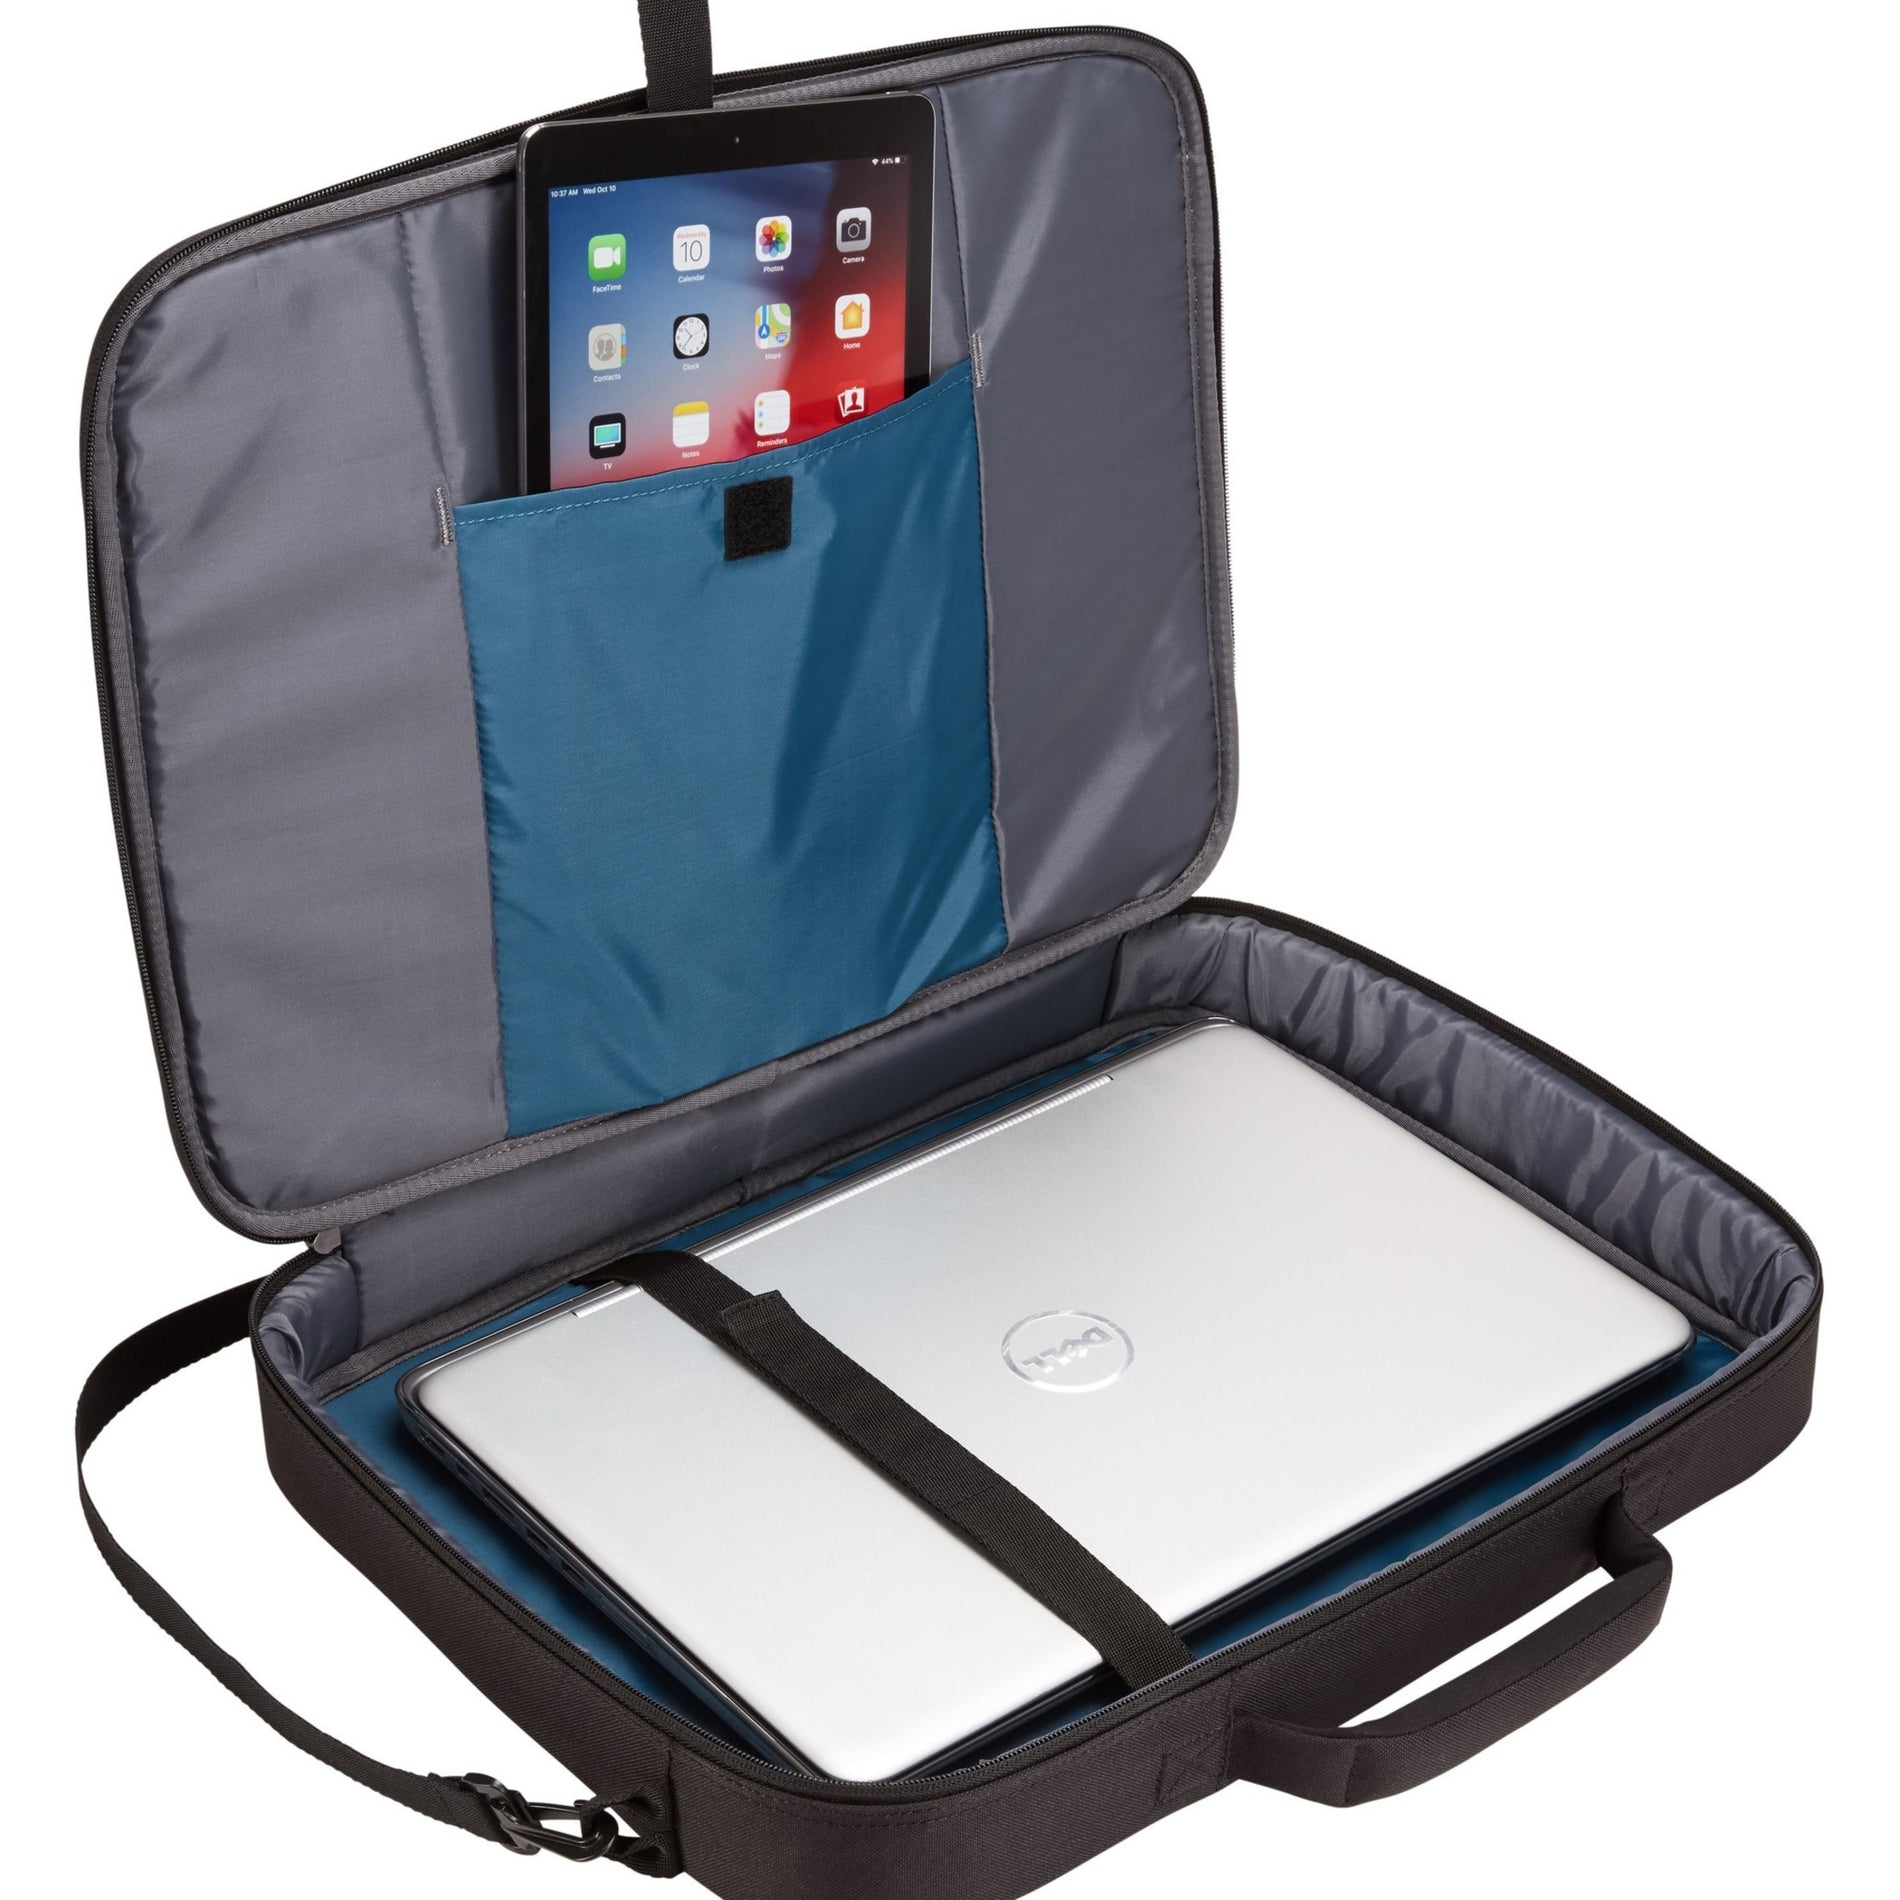 Case Logic 3203991 Advantage 17.3" Laptop Briefcase, Black